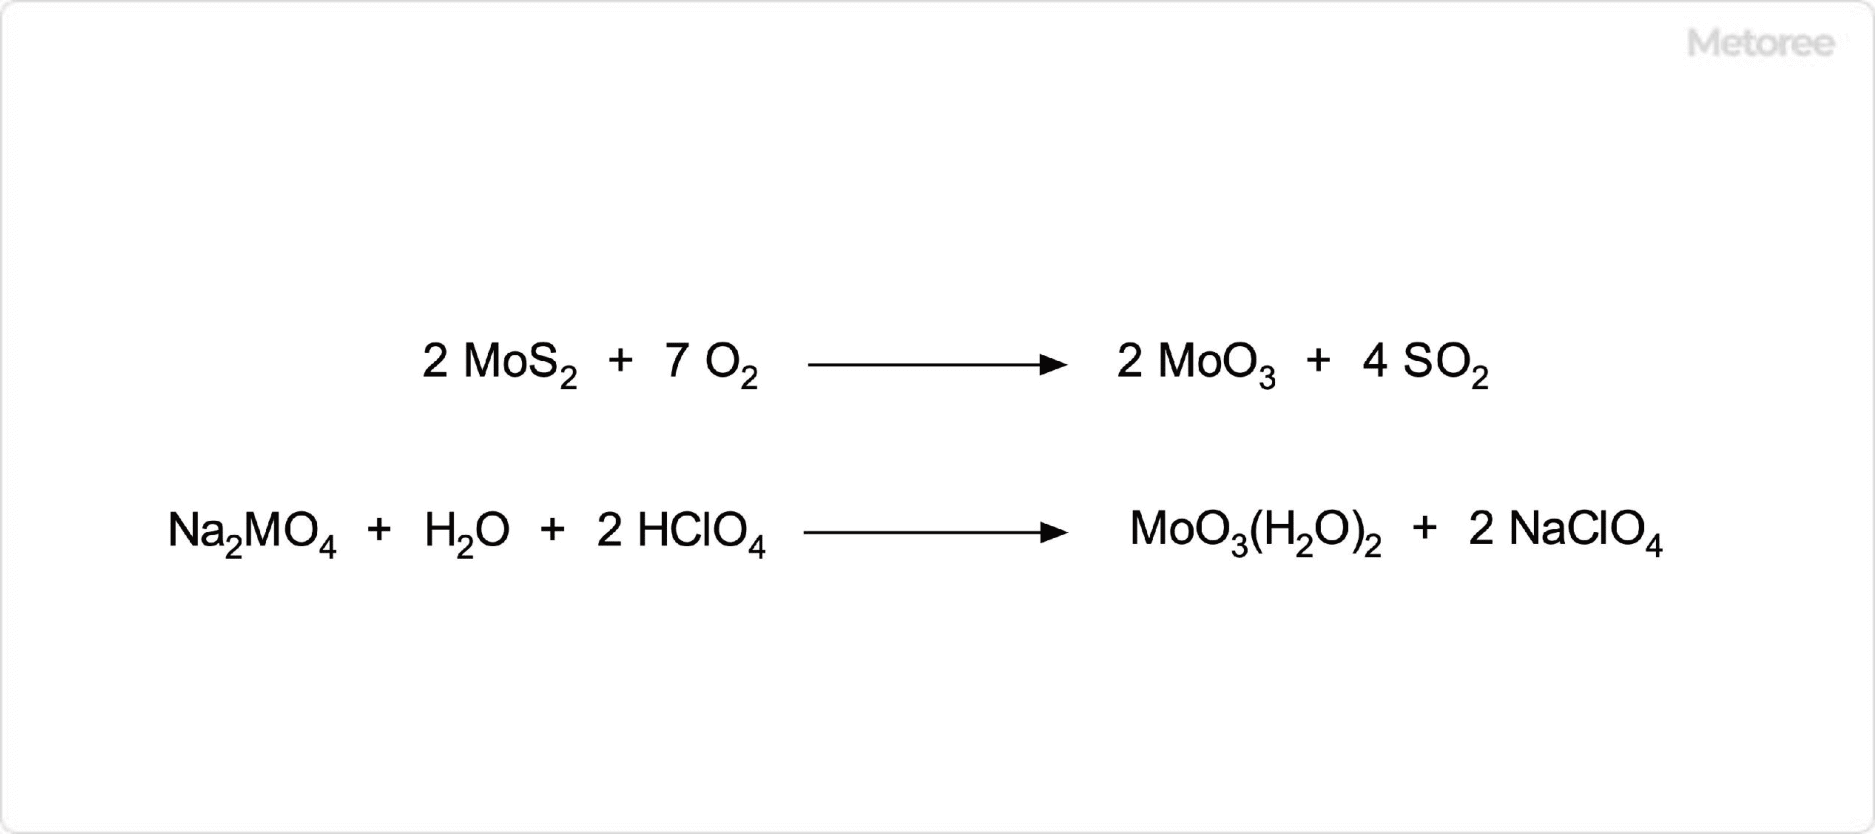 三酸化モリブデンの合成